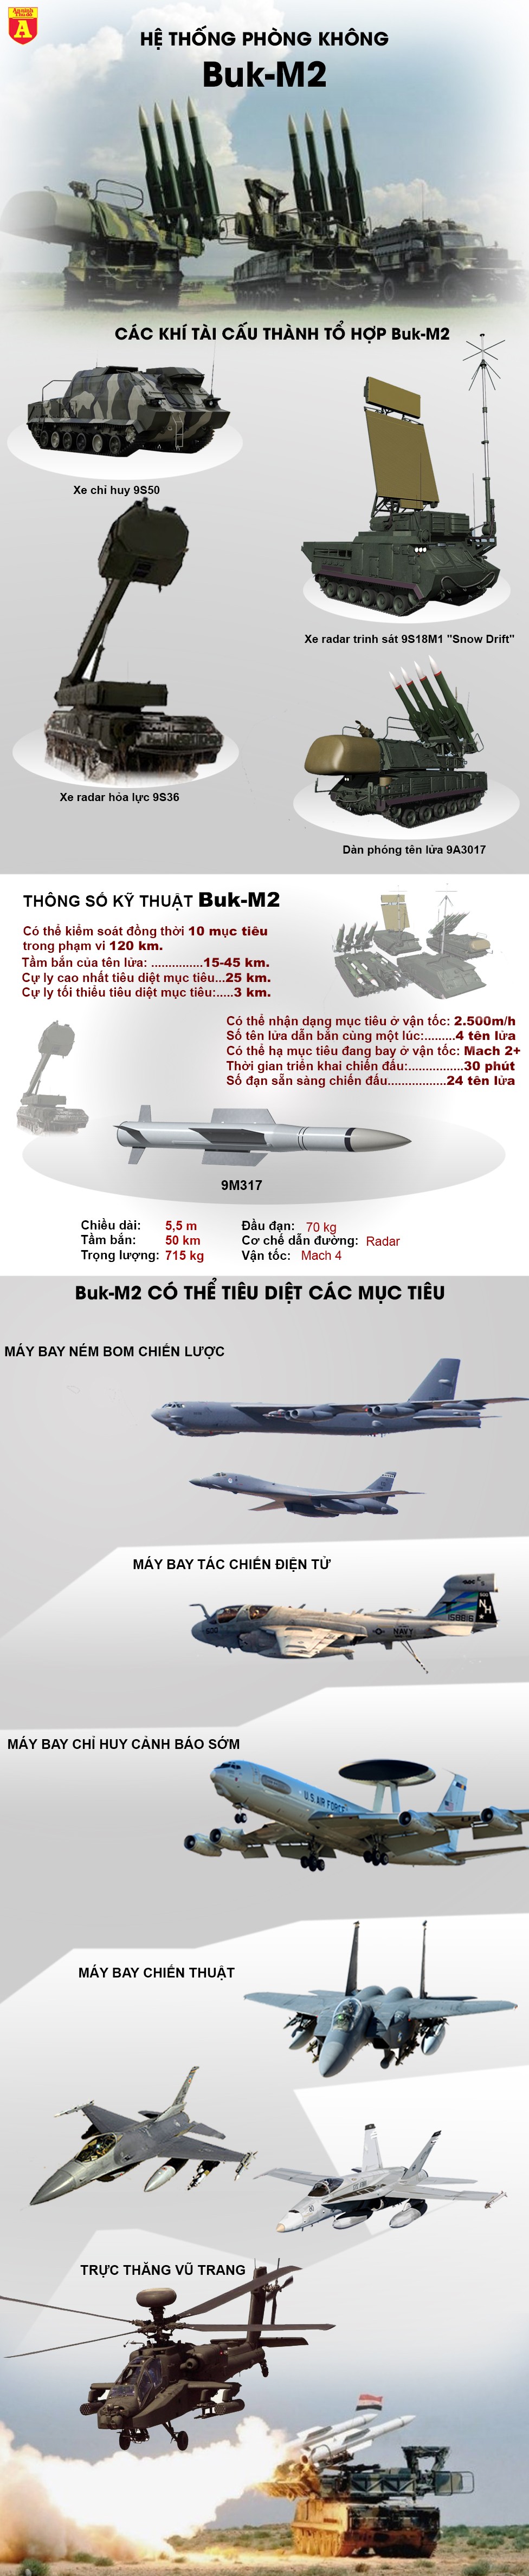 [Info] Venezuela bất ngờ bắn Buk-M2, sẵn sàng đón đợi máy bay Mỹ? ảnh 2